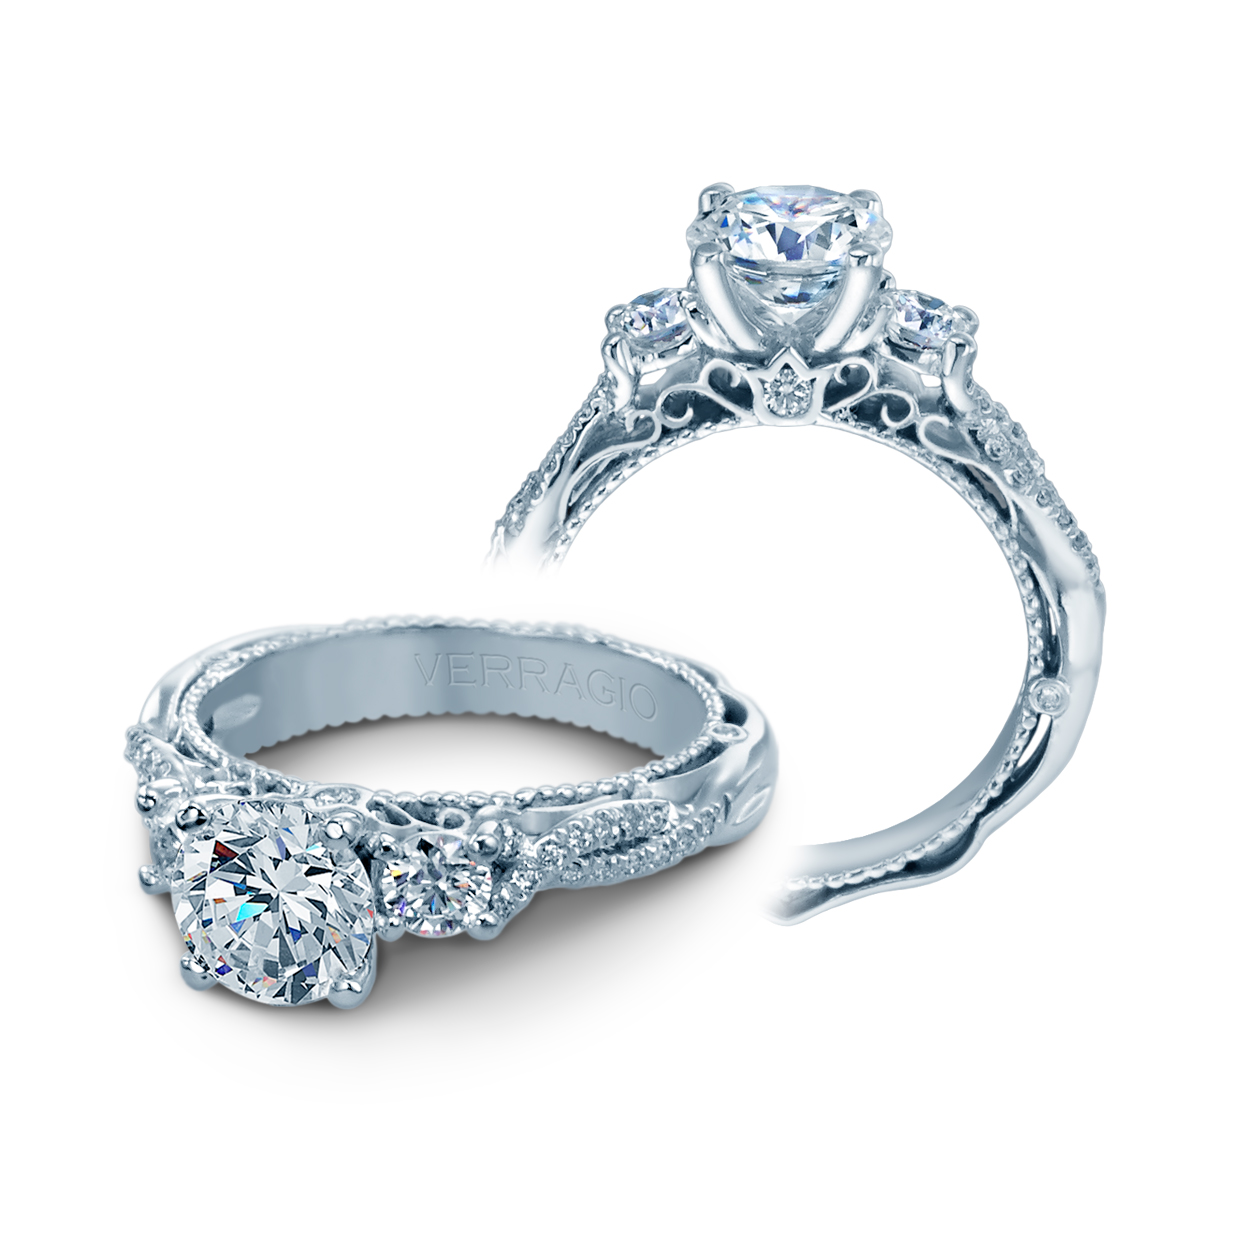 Verragio Engagement Diamond Ring